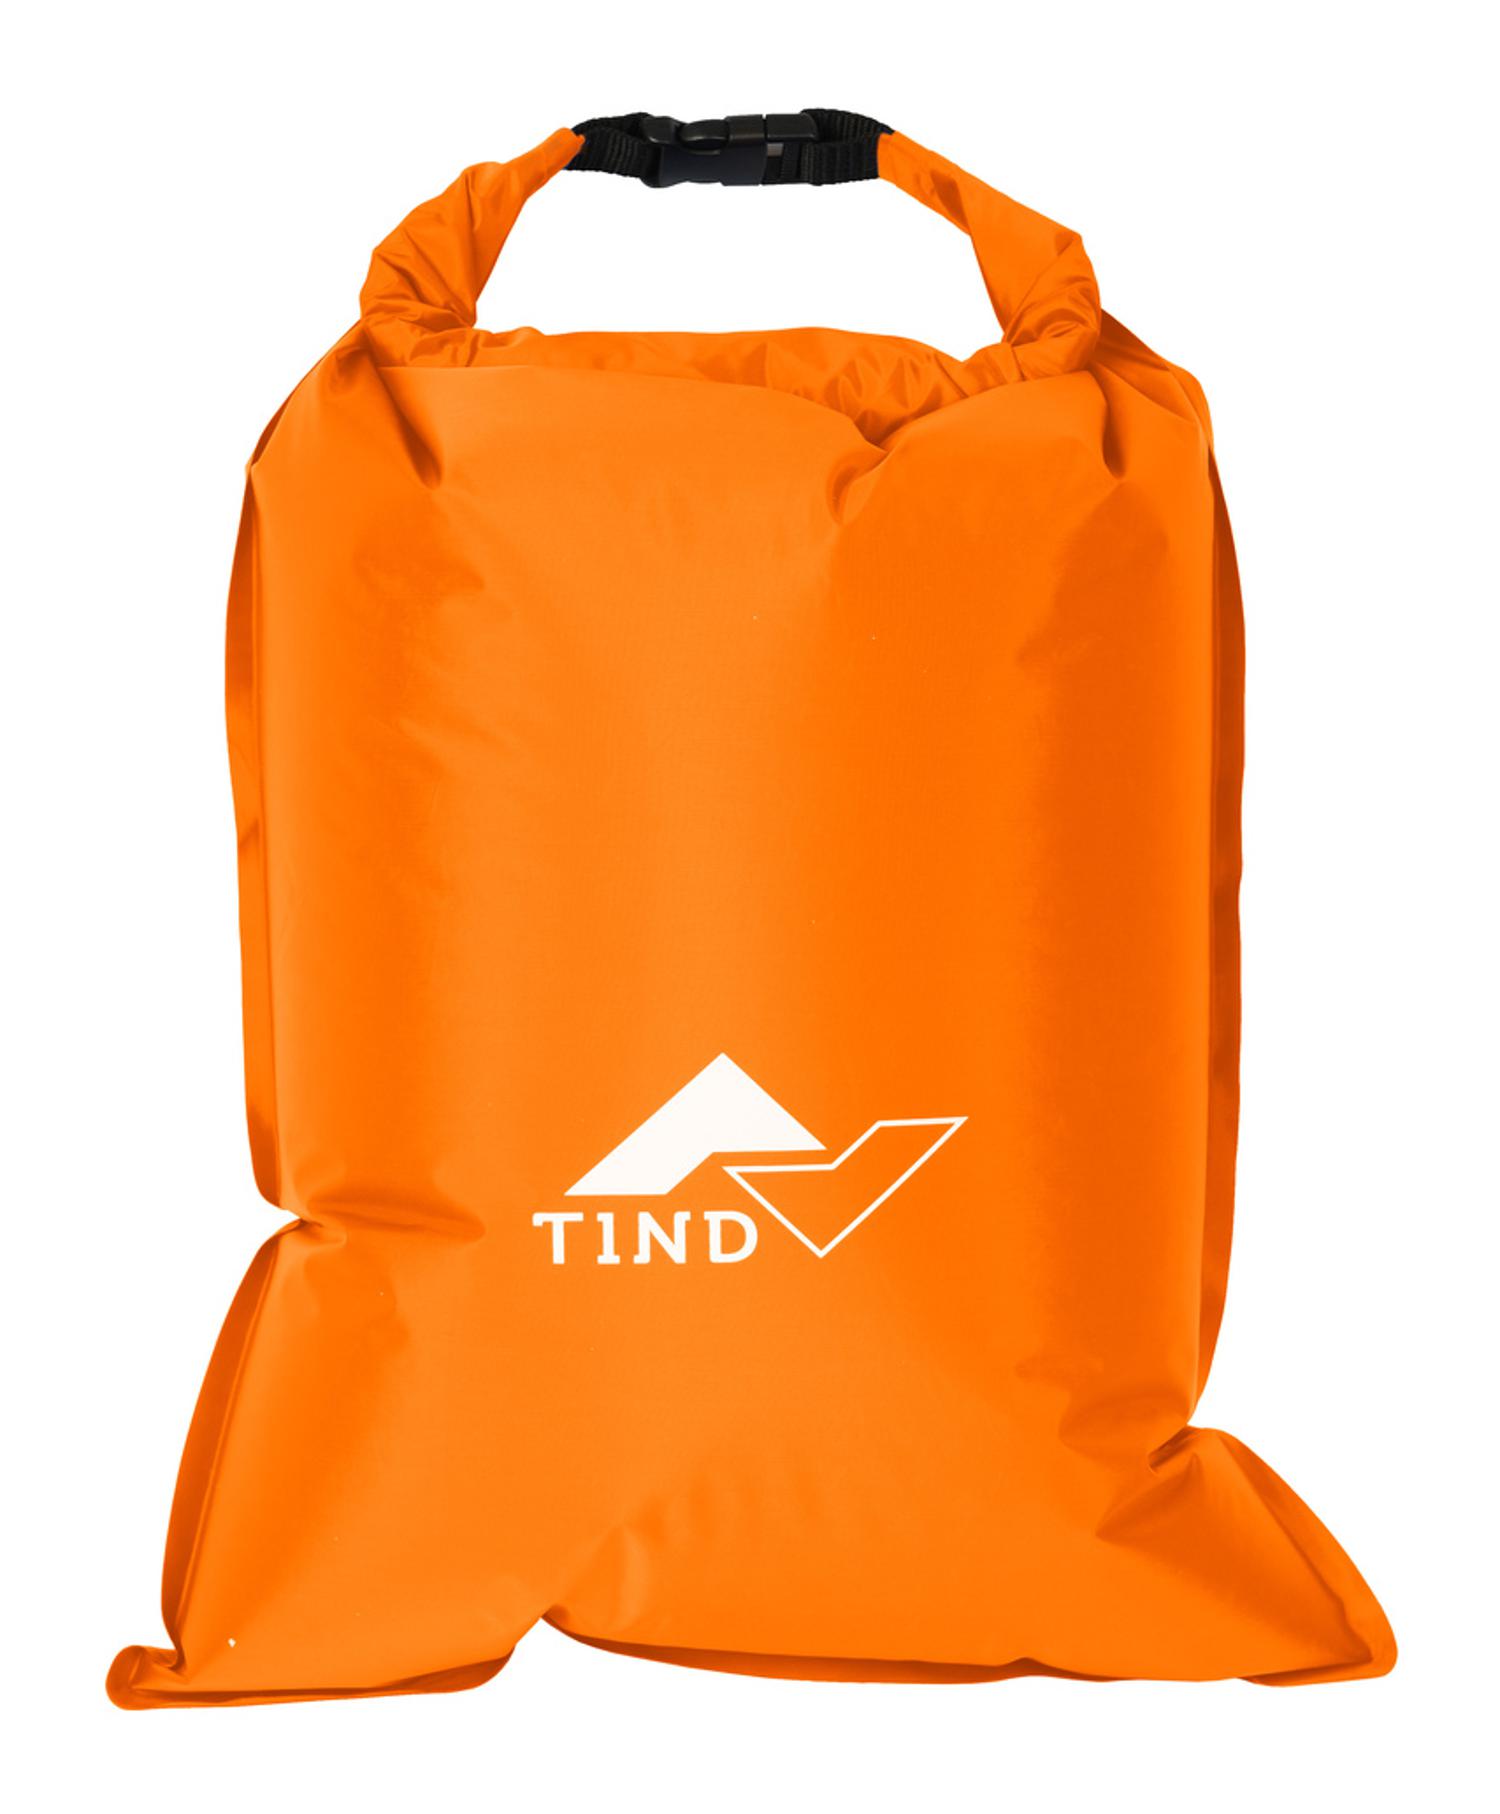 Tind Drybag